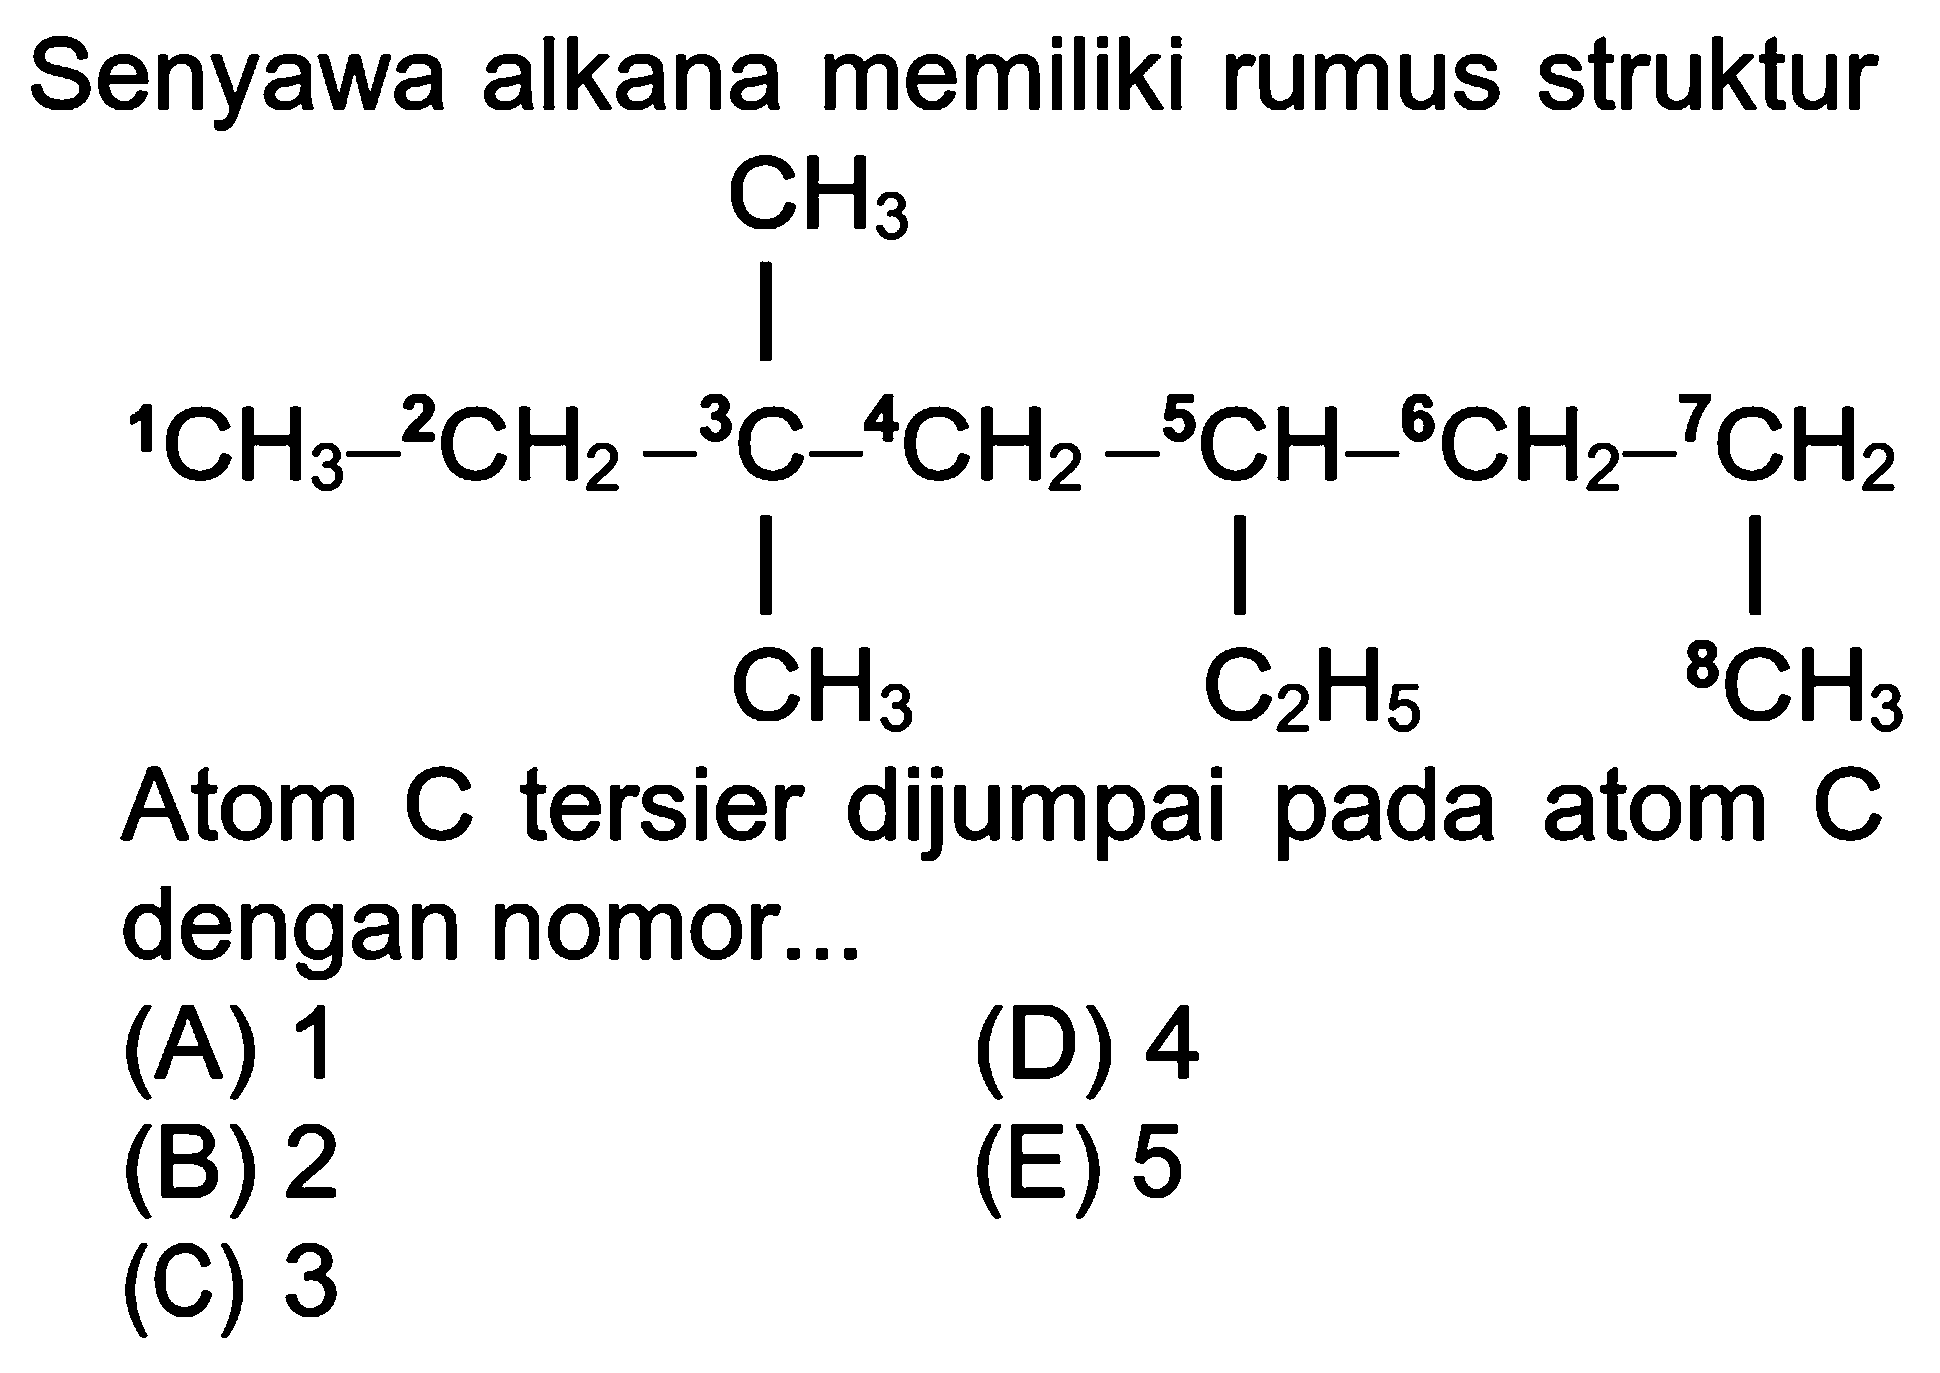 Senyawa alkana memiliki rumus struktur 1CH3-2CH2-3C-4CH2-5CH-6CH2-7CH2-8CH3 CH3 CH3 C2H5 Atom C tersier dijumpai pada atom C dengan nomor ... (A) 1 (B) 2 (C) 3 (D) 4 (E) 5 